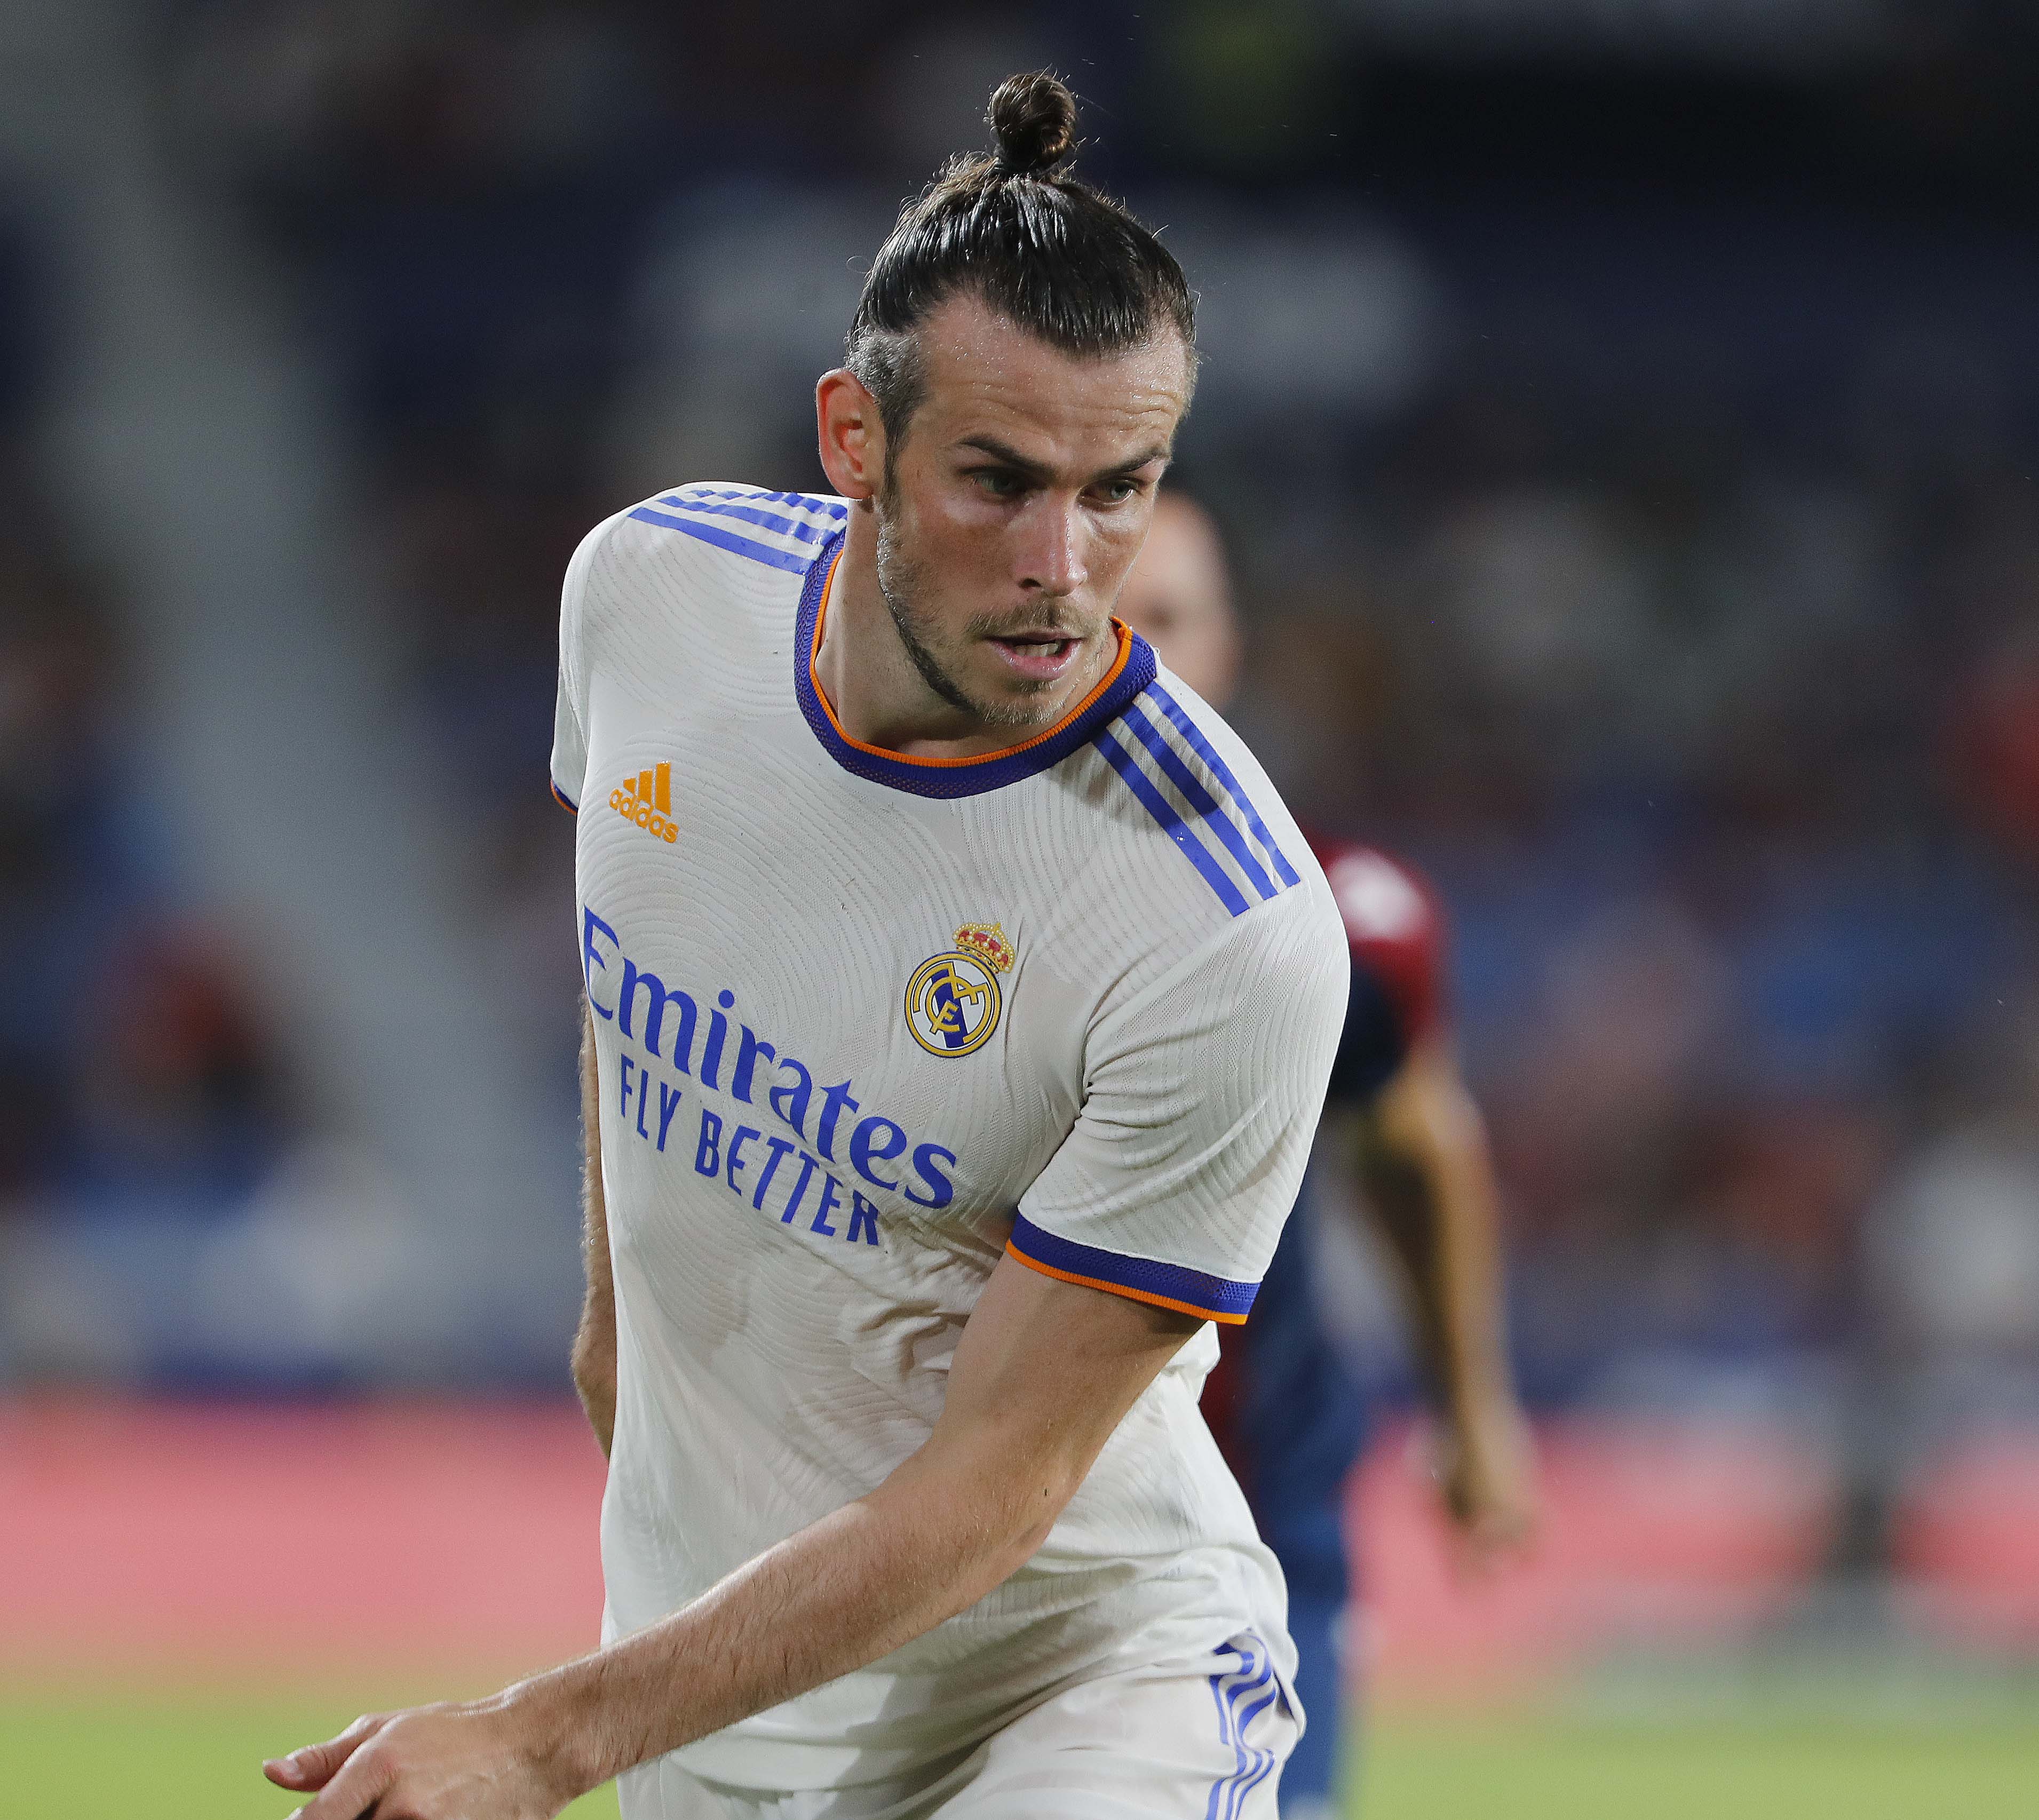 Tinggalkan Real Madrid, Gareth Bale Tertawakan Rumor ke Getafe